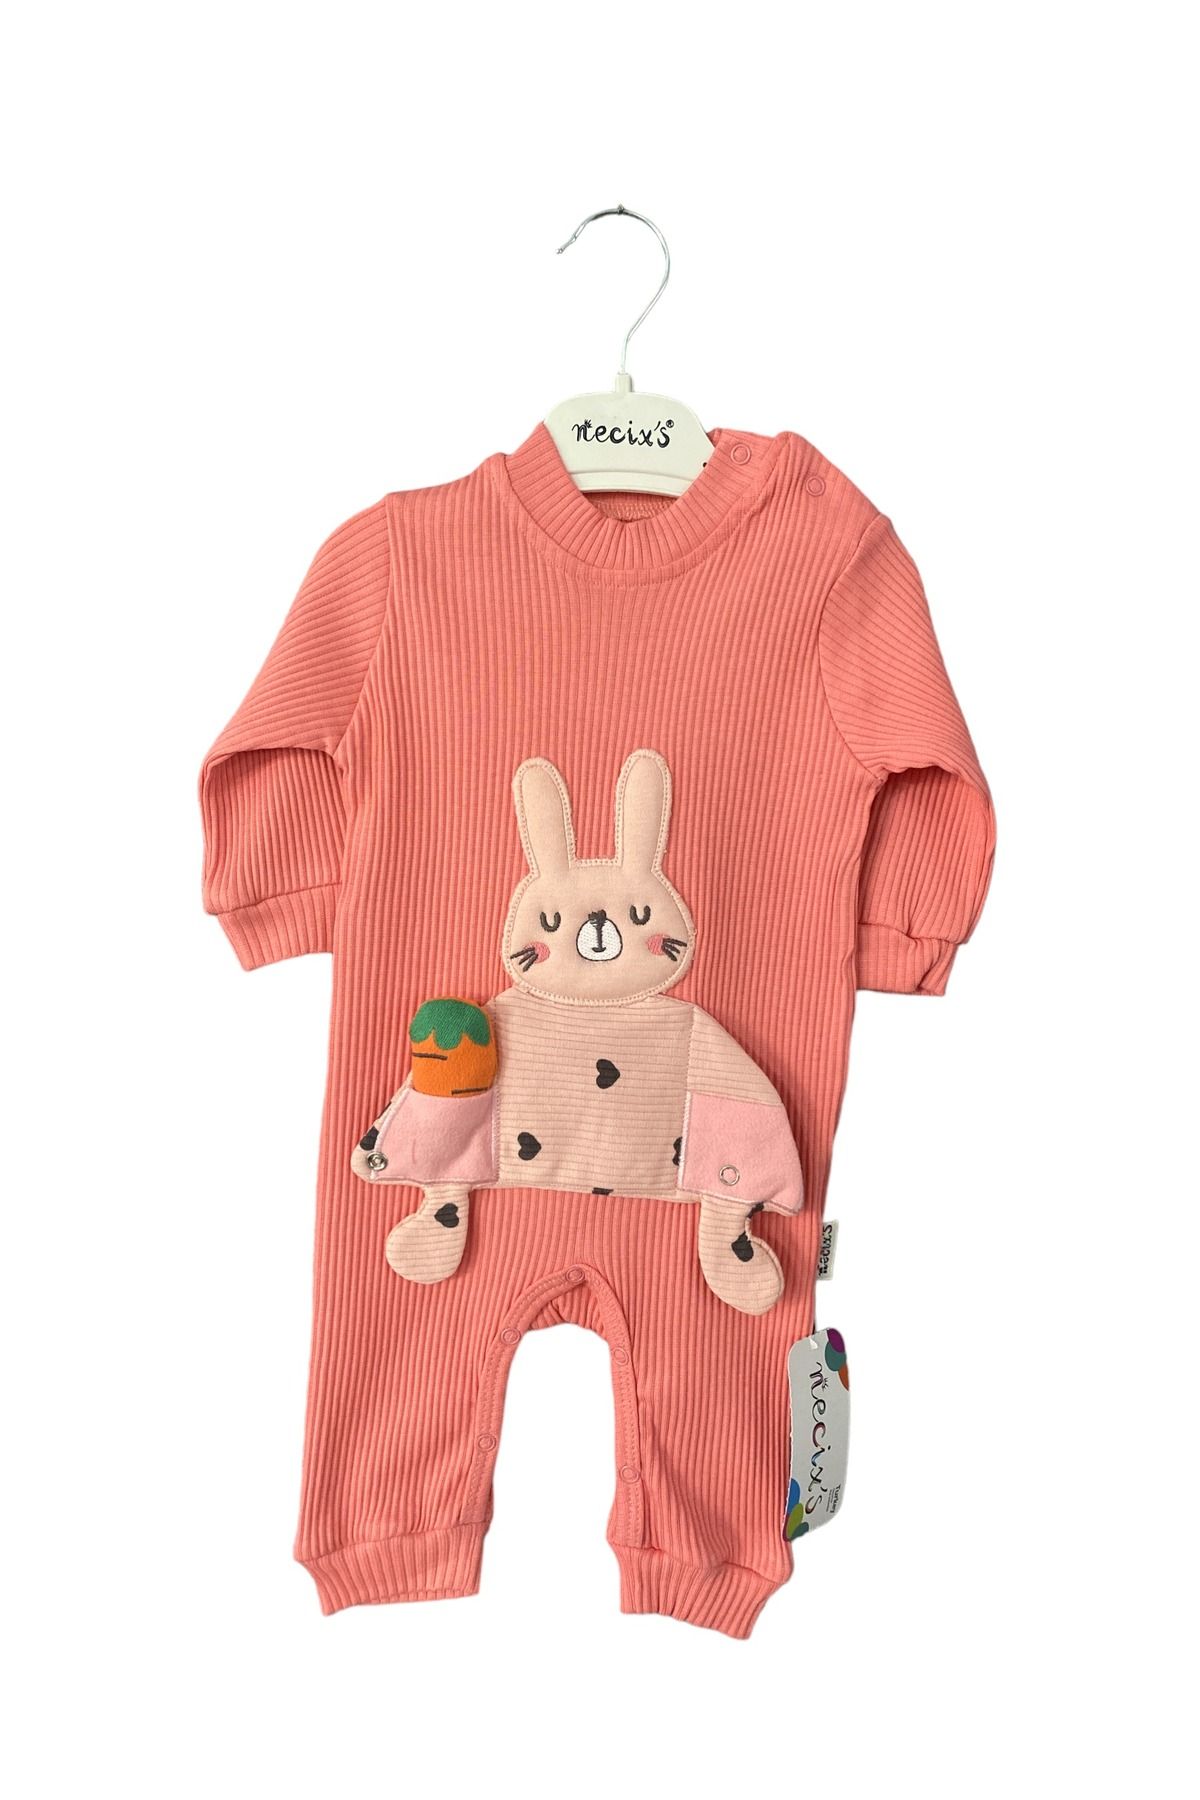 Necix's Tavşan oyuncaklı bebek tulum